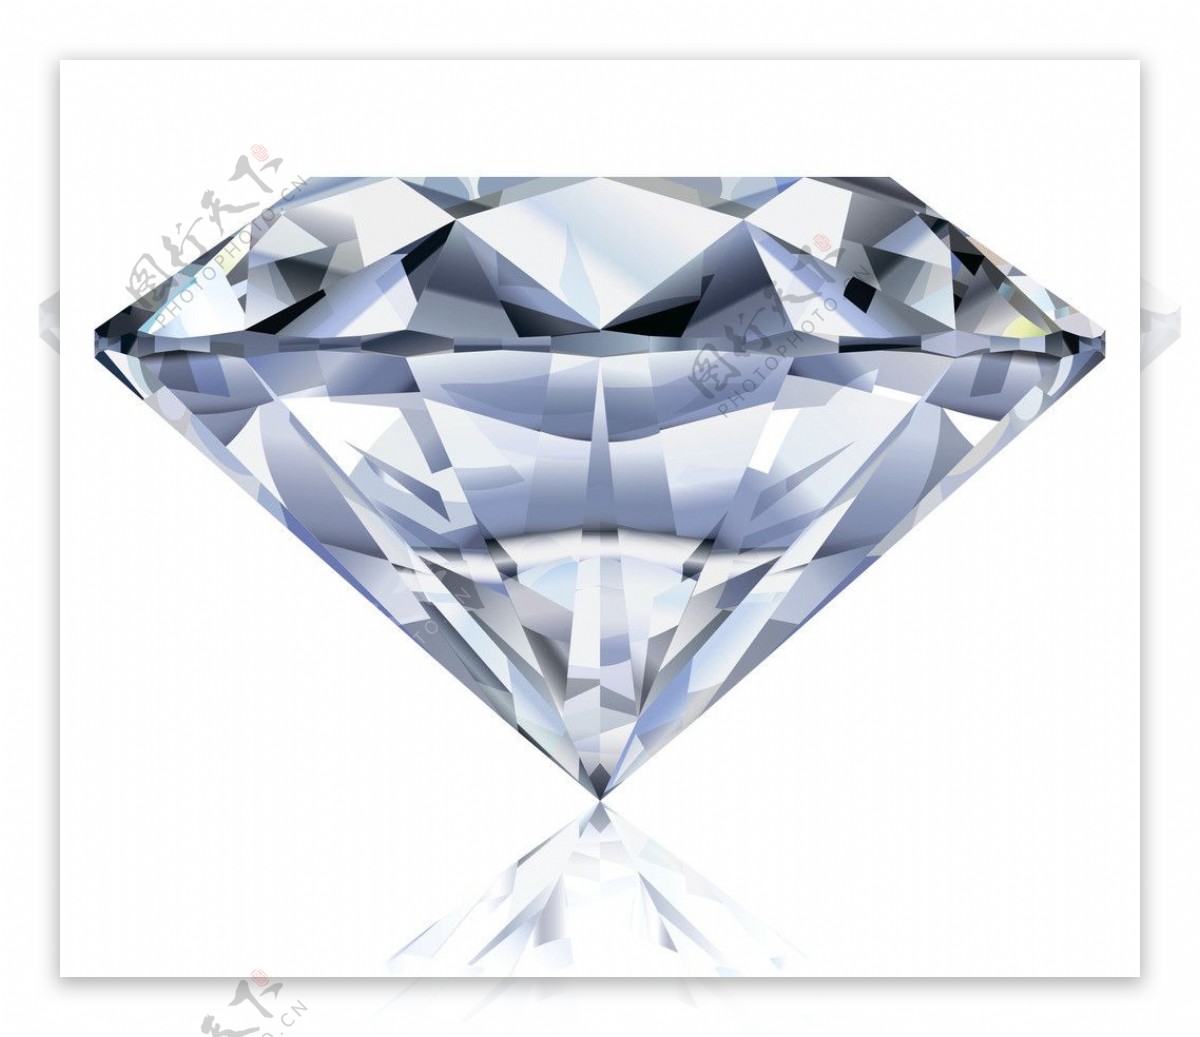 宝石钻石背景图片